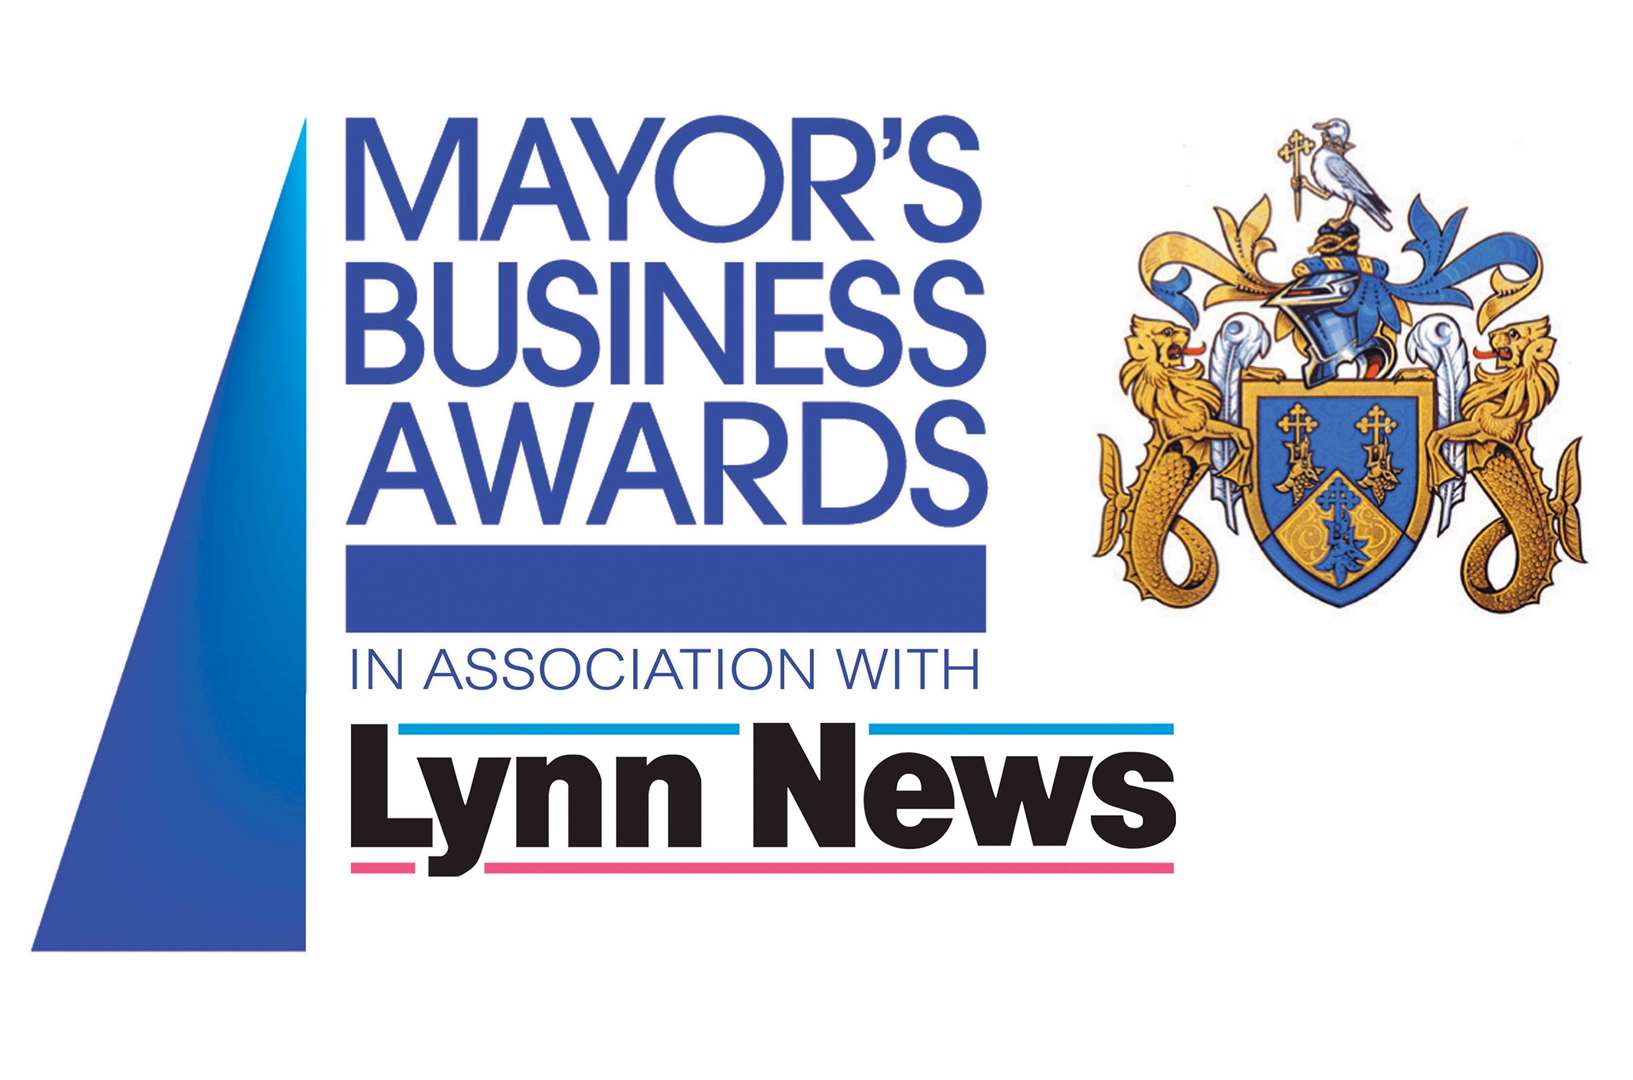 The Lynn News organises the Mayor’s Business Awards